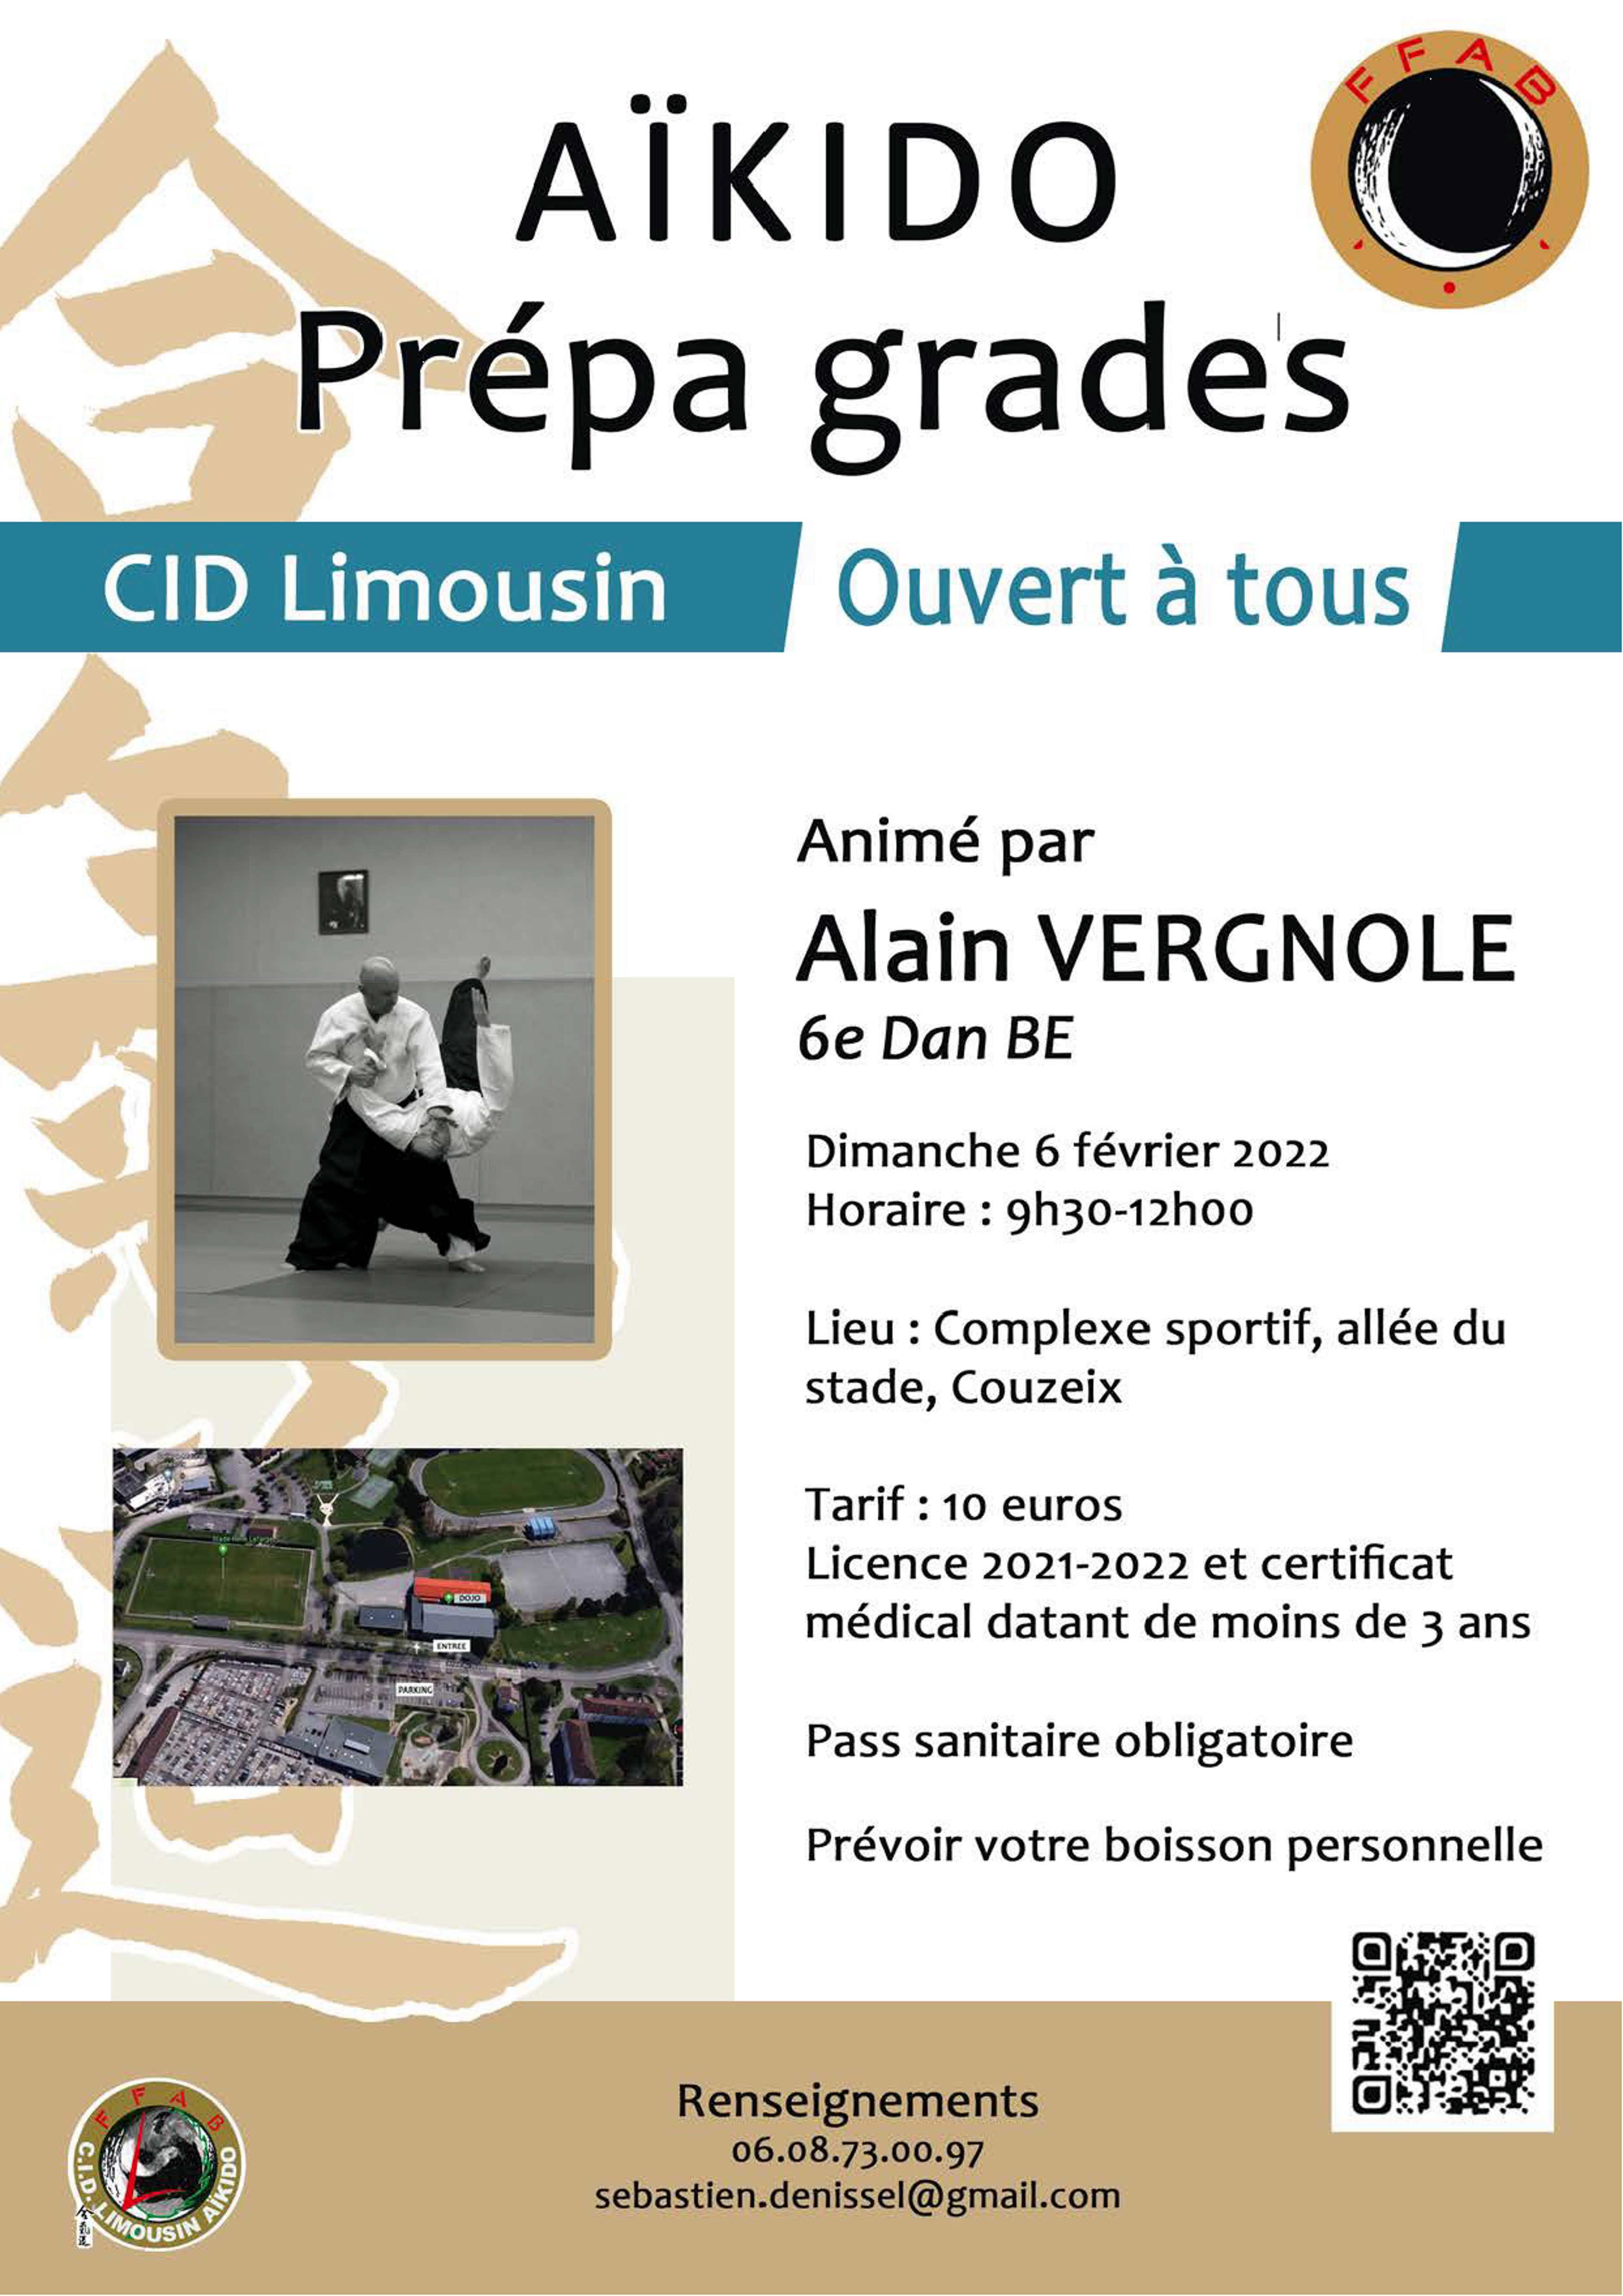 220206 Affiche Stage CIDL Alain Vergnole.jpg - 1,24 MB